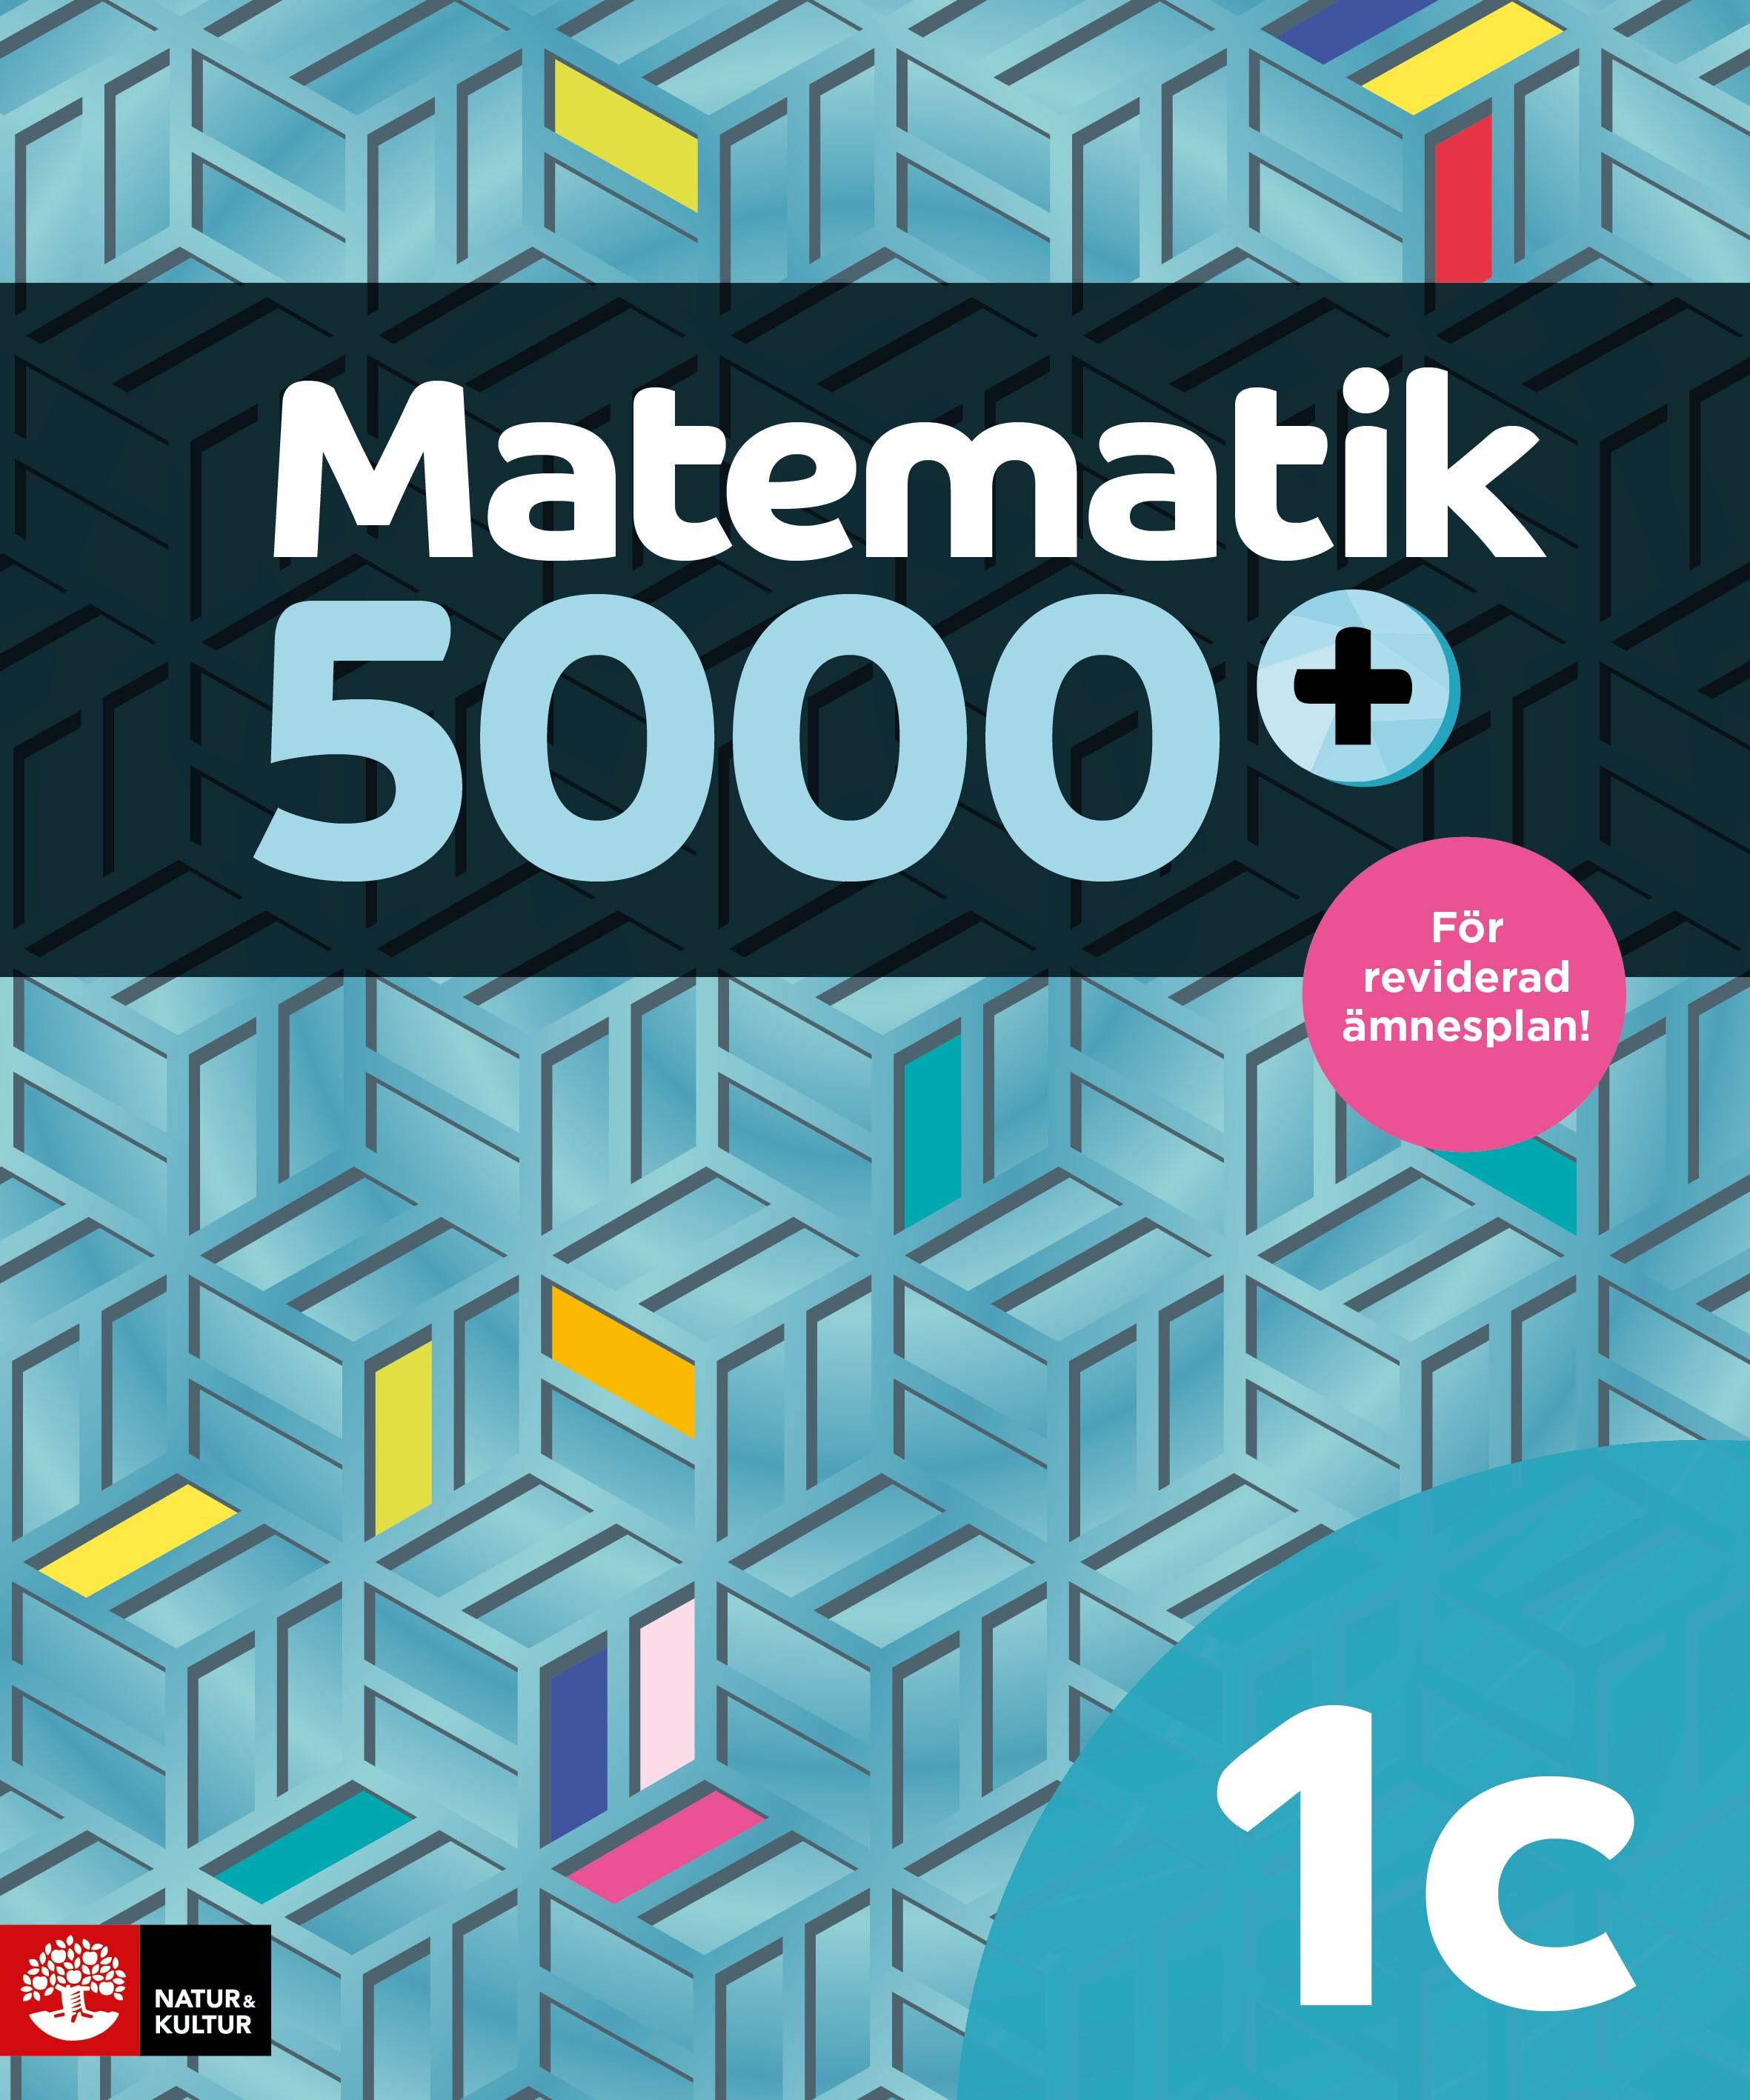 Matematik 5000+ Kurs 1c Lärobok DigitalbokUppl2021